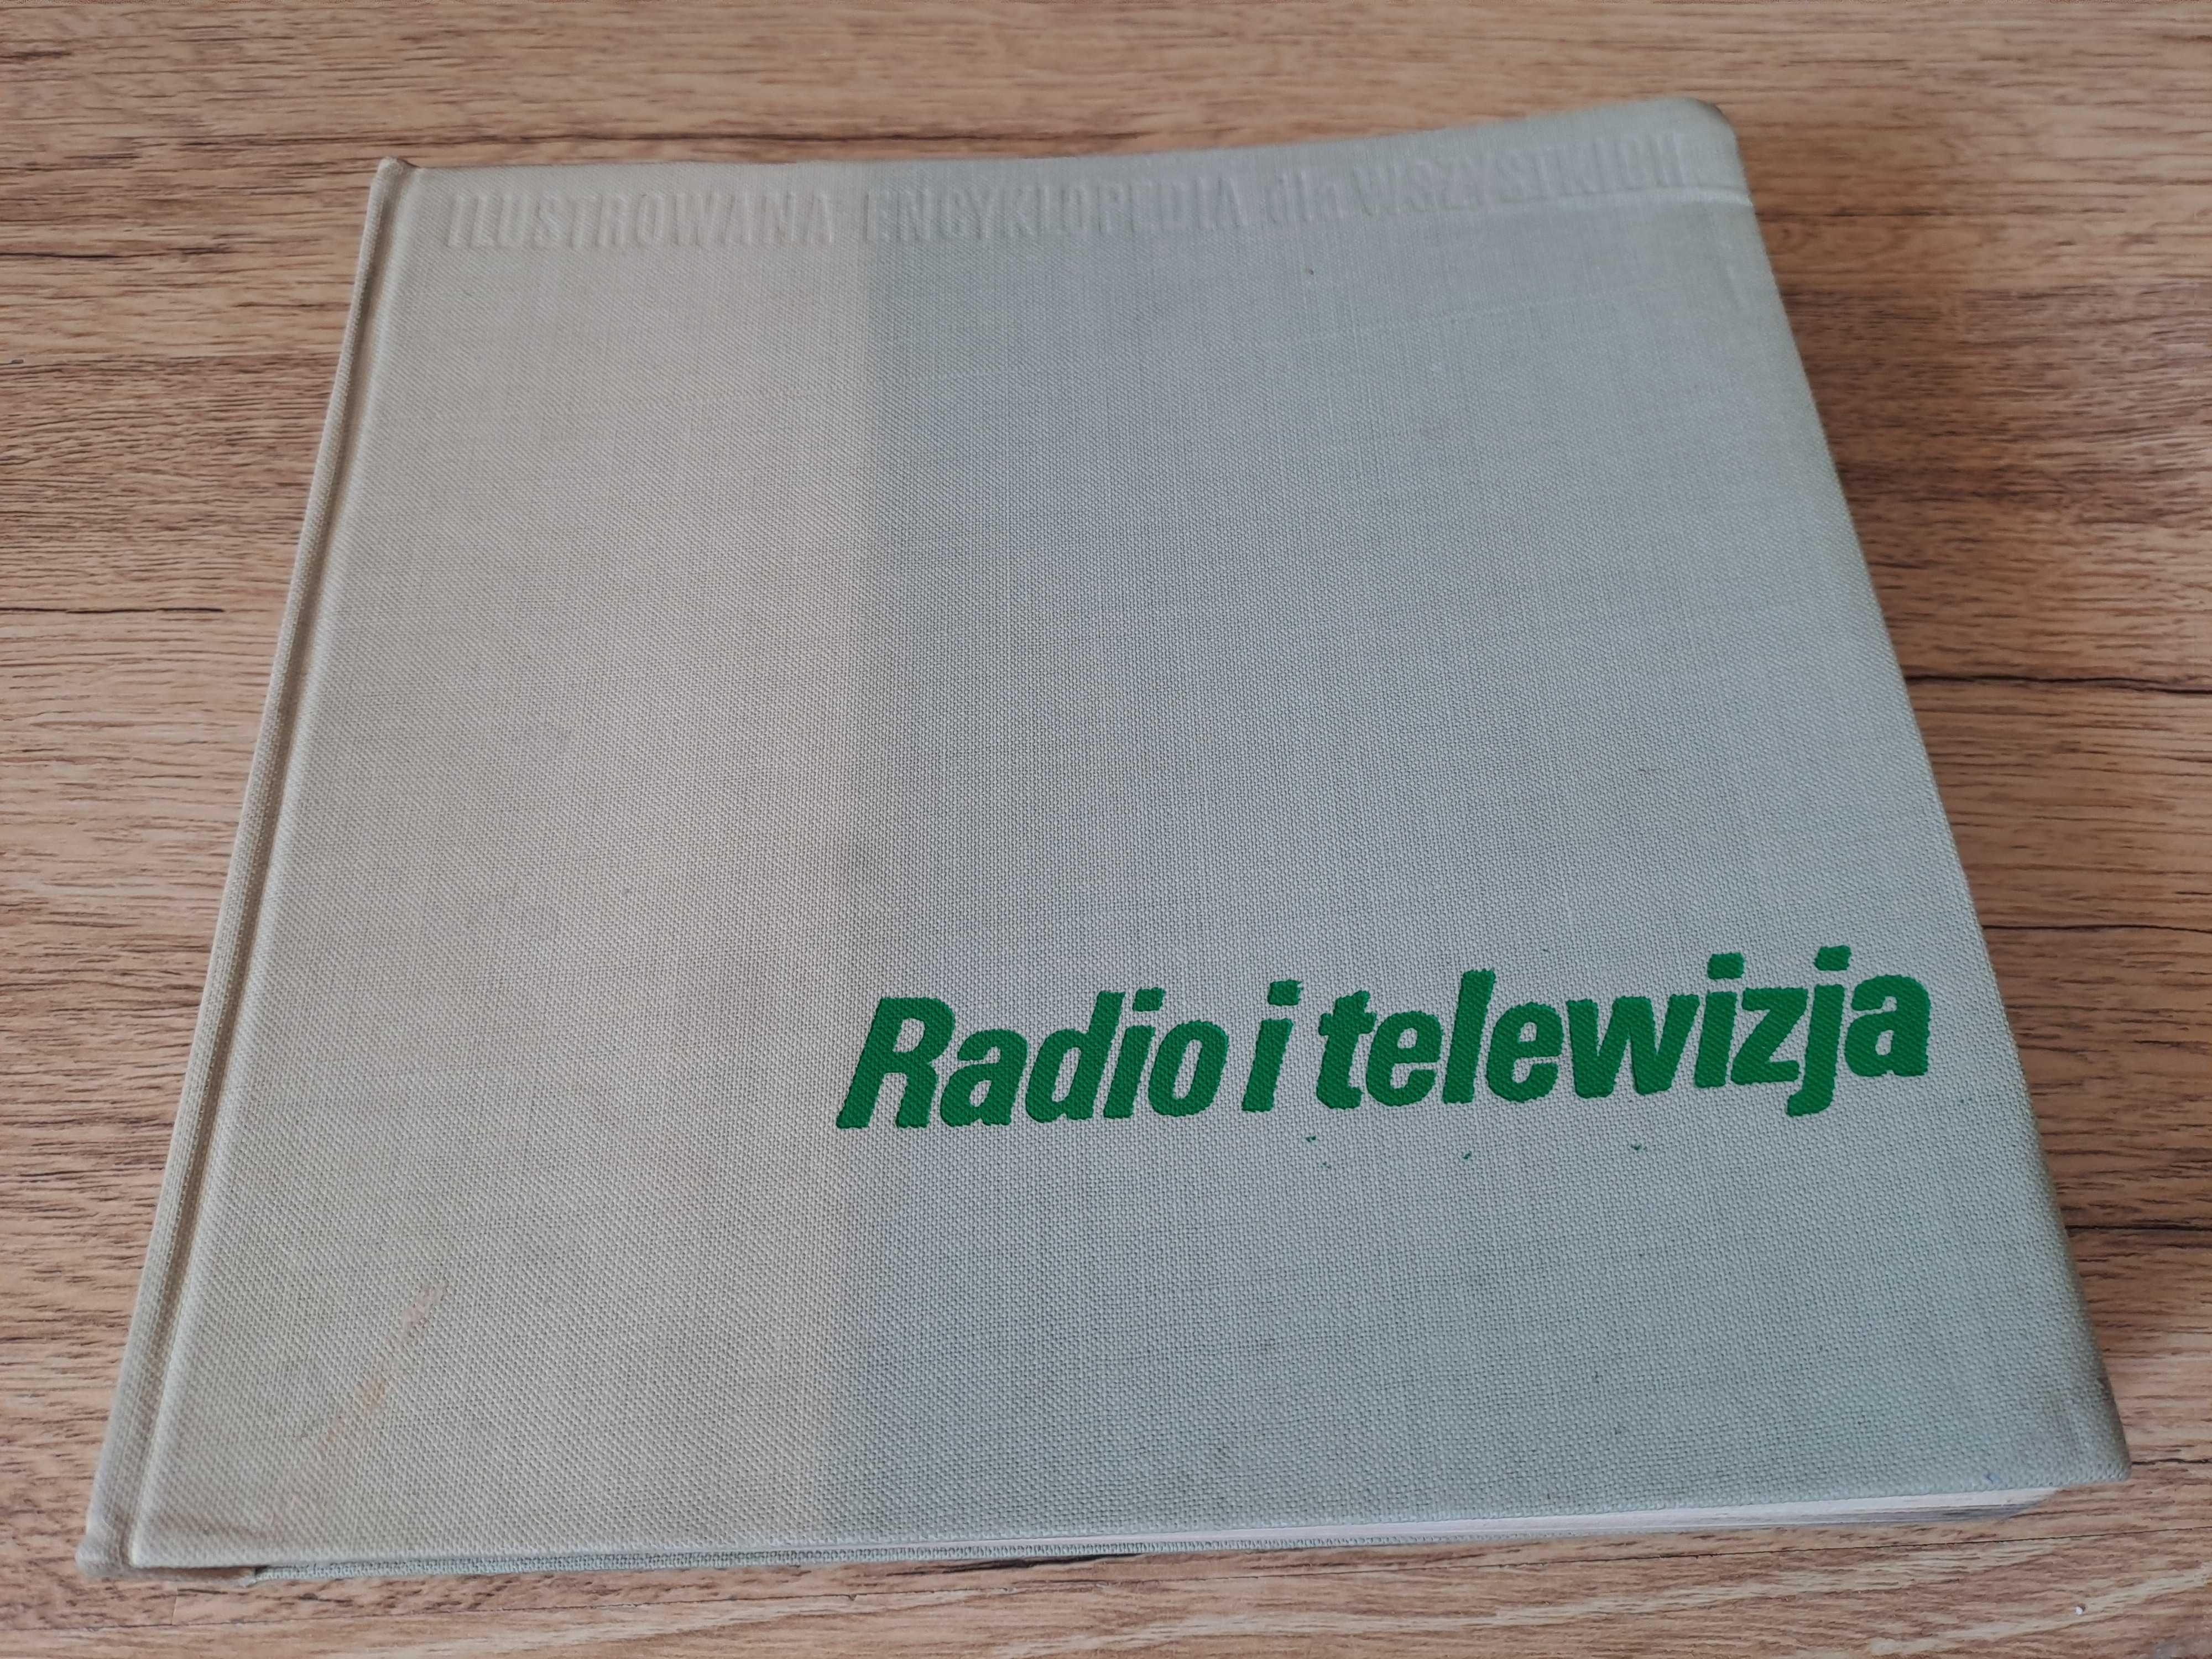 Radio i telewizja - ilustrowana encyklopedia dla wszystkich